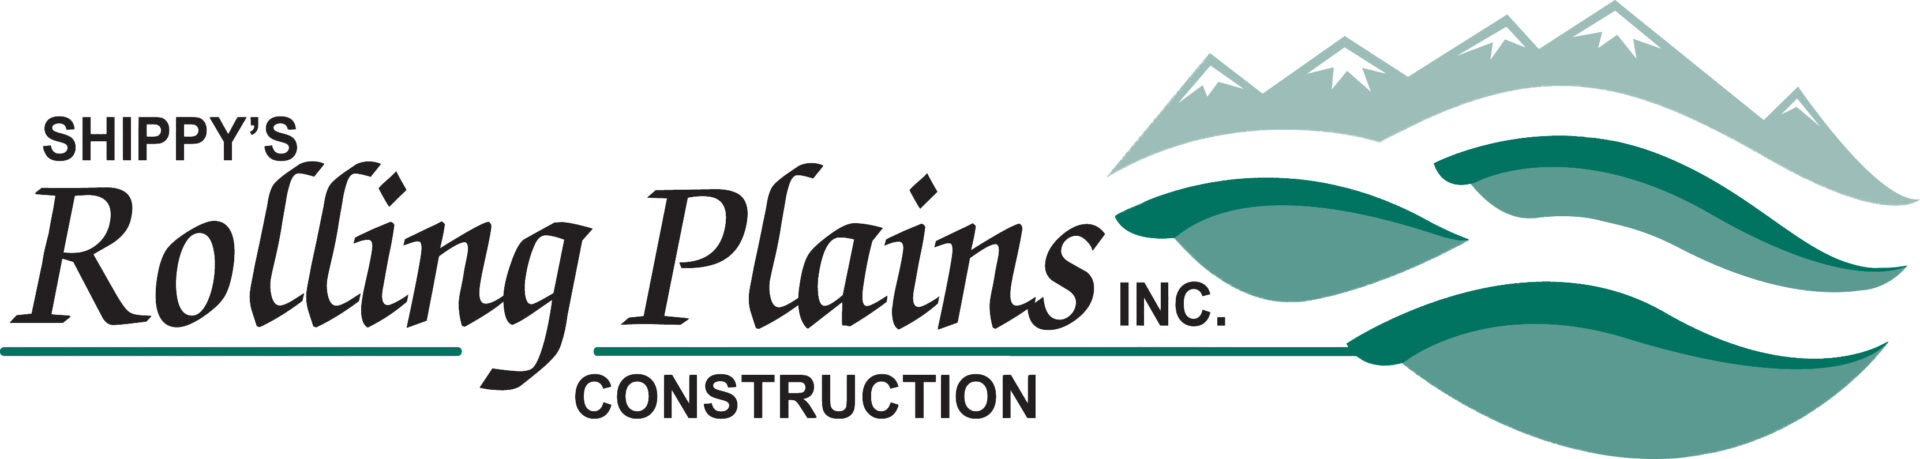 Rolling Plains Construction